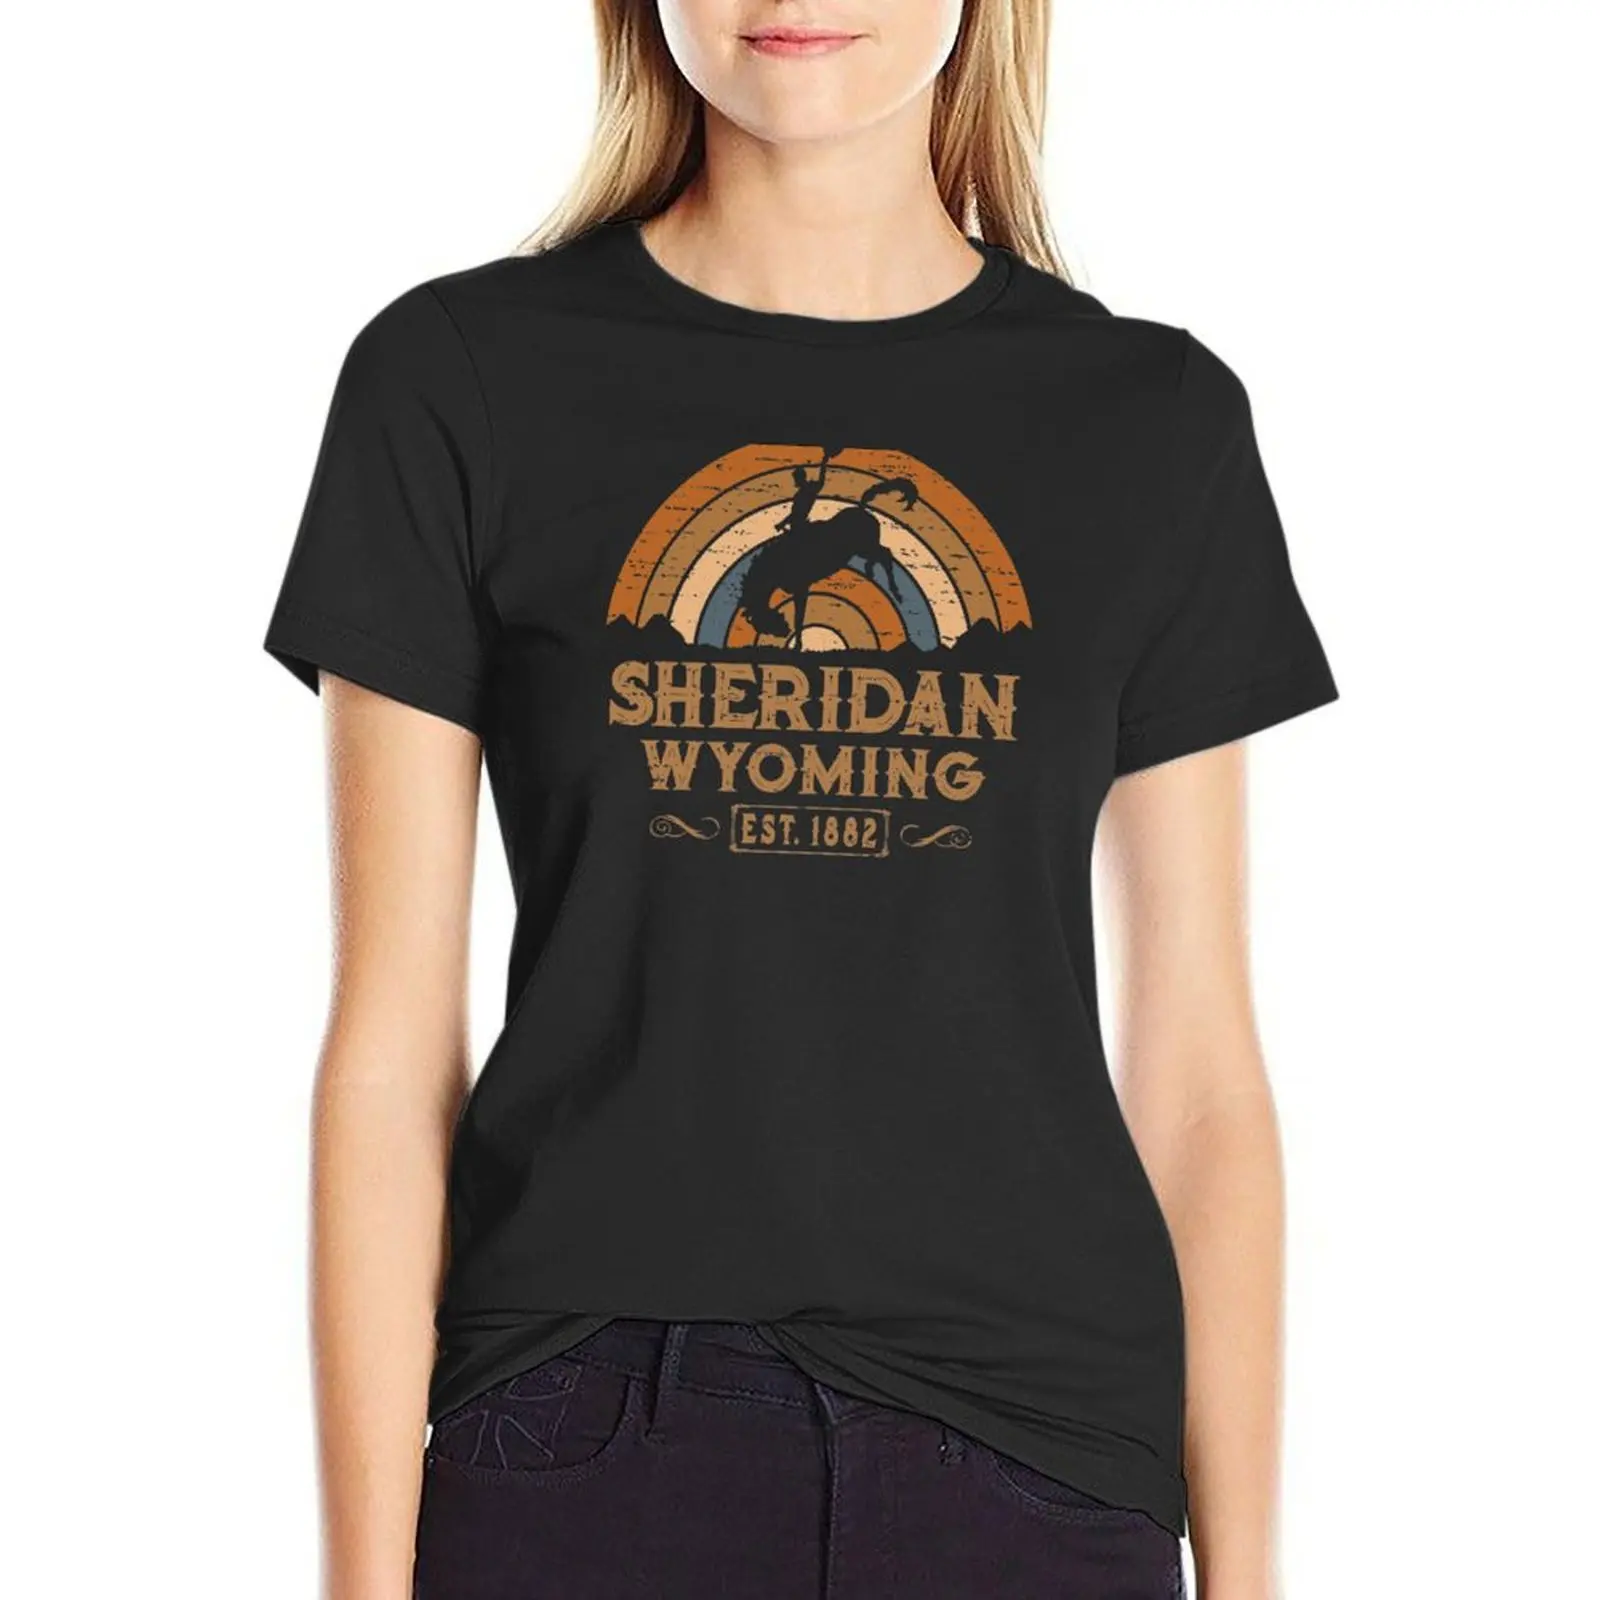 

Sheridan Wyoming Retro Wild West Cowboy T-Shirt Blouse plain Women's cotton t-shirt